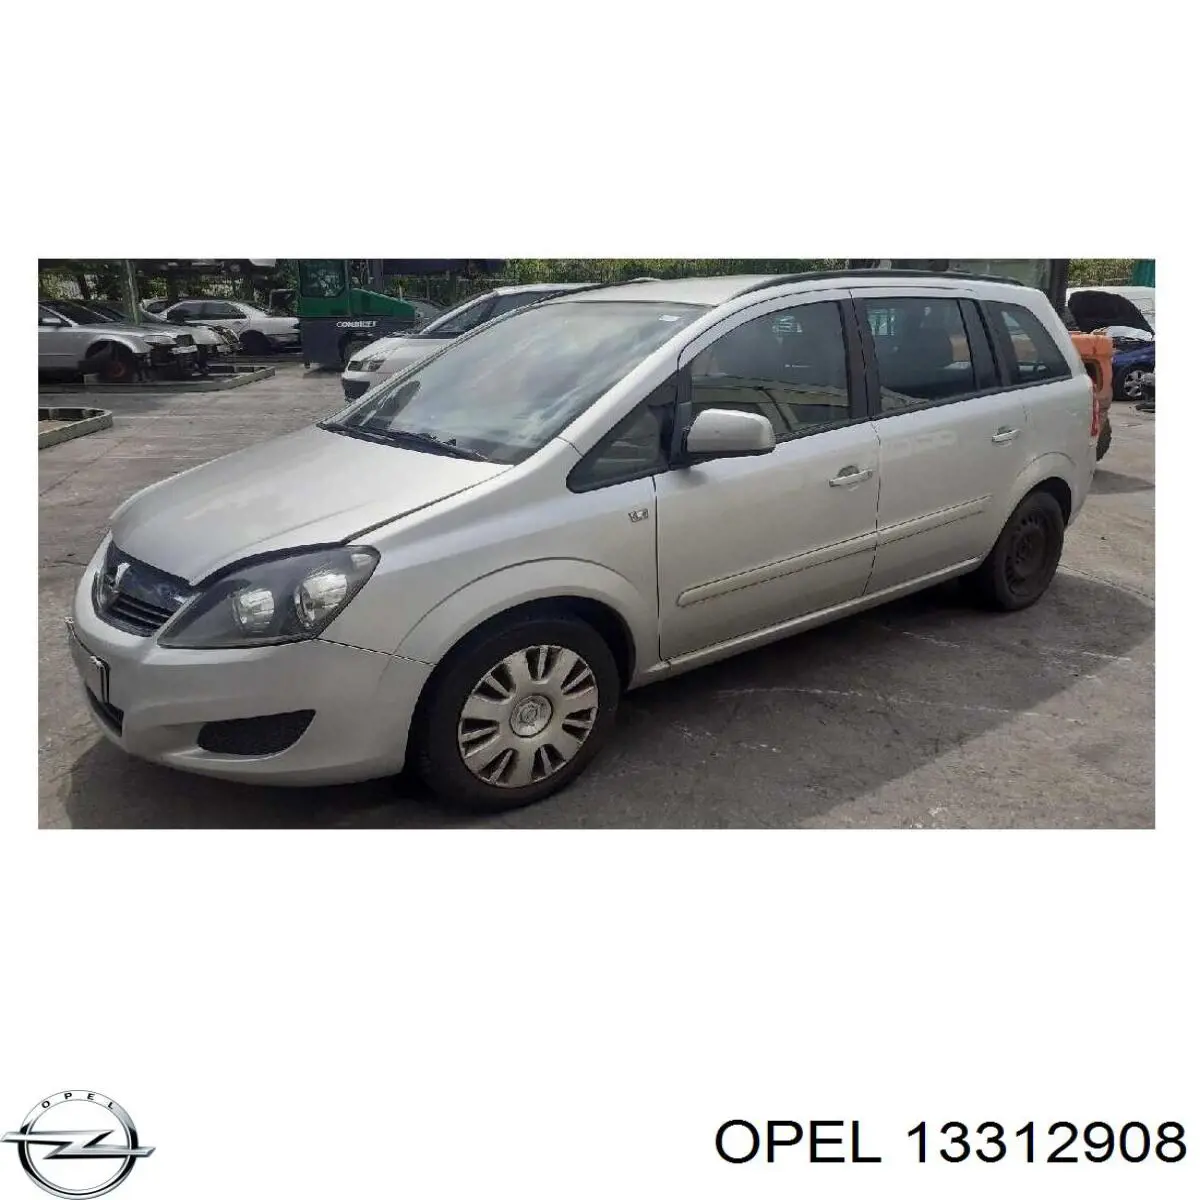 13312908 Opel espejo retrovisor derecho